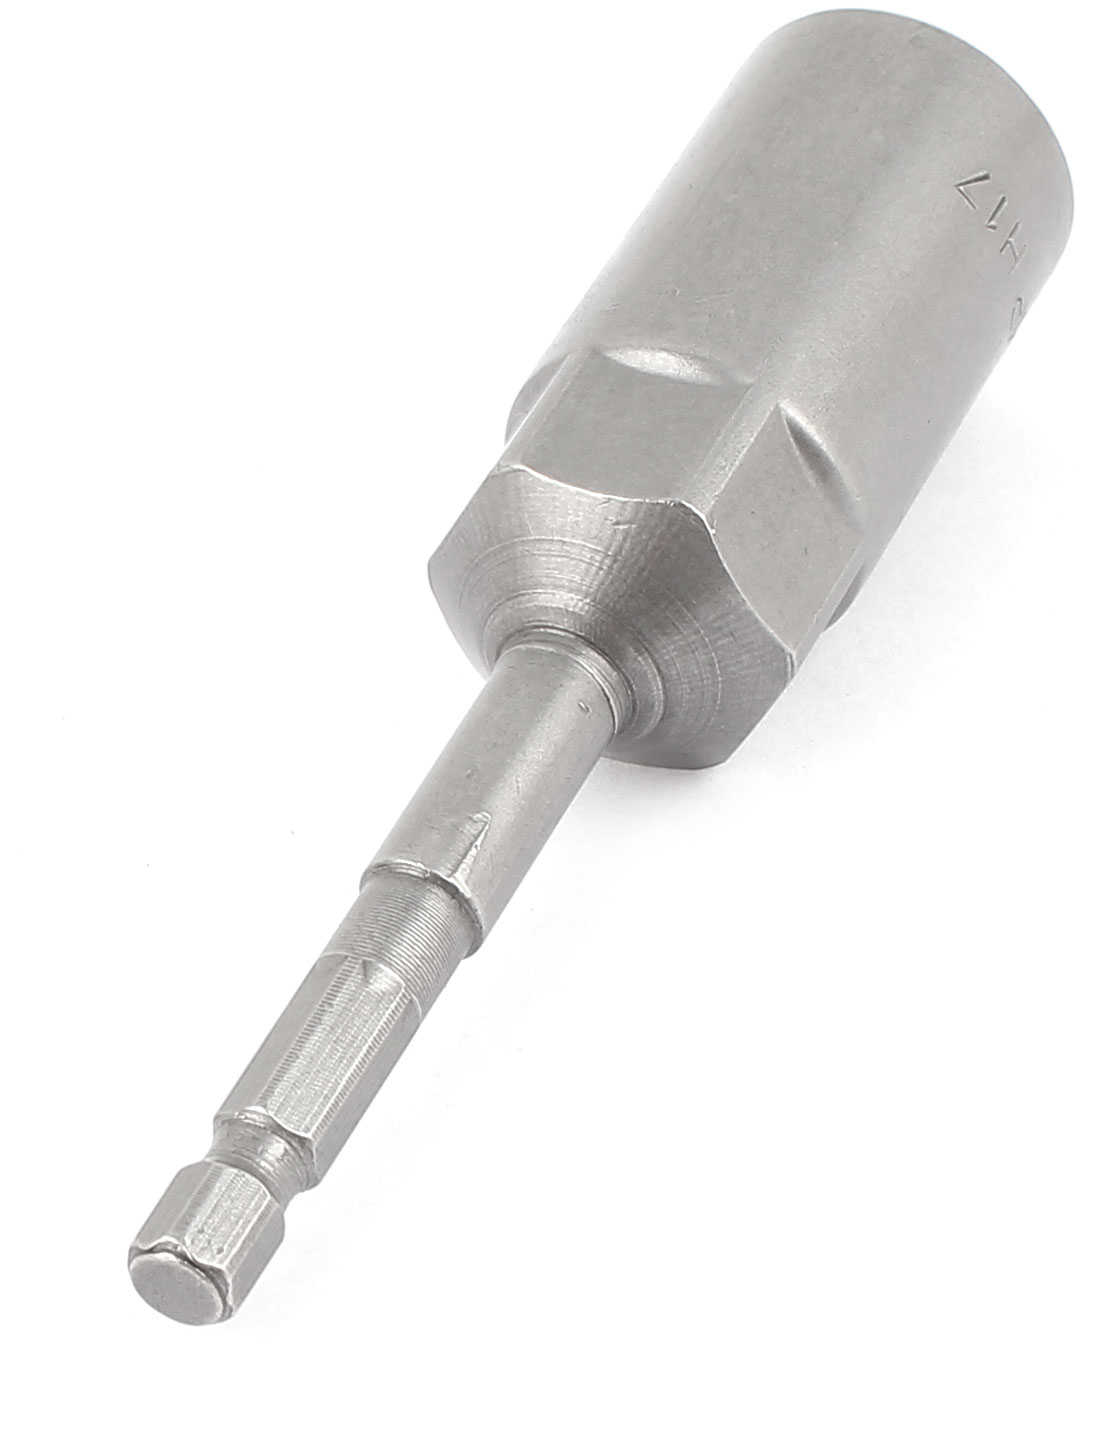 Unique Bargains 4' Length 17mm Hex Socket Nut Setters Driver Bit Power Tool Gray